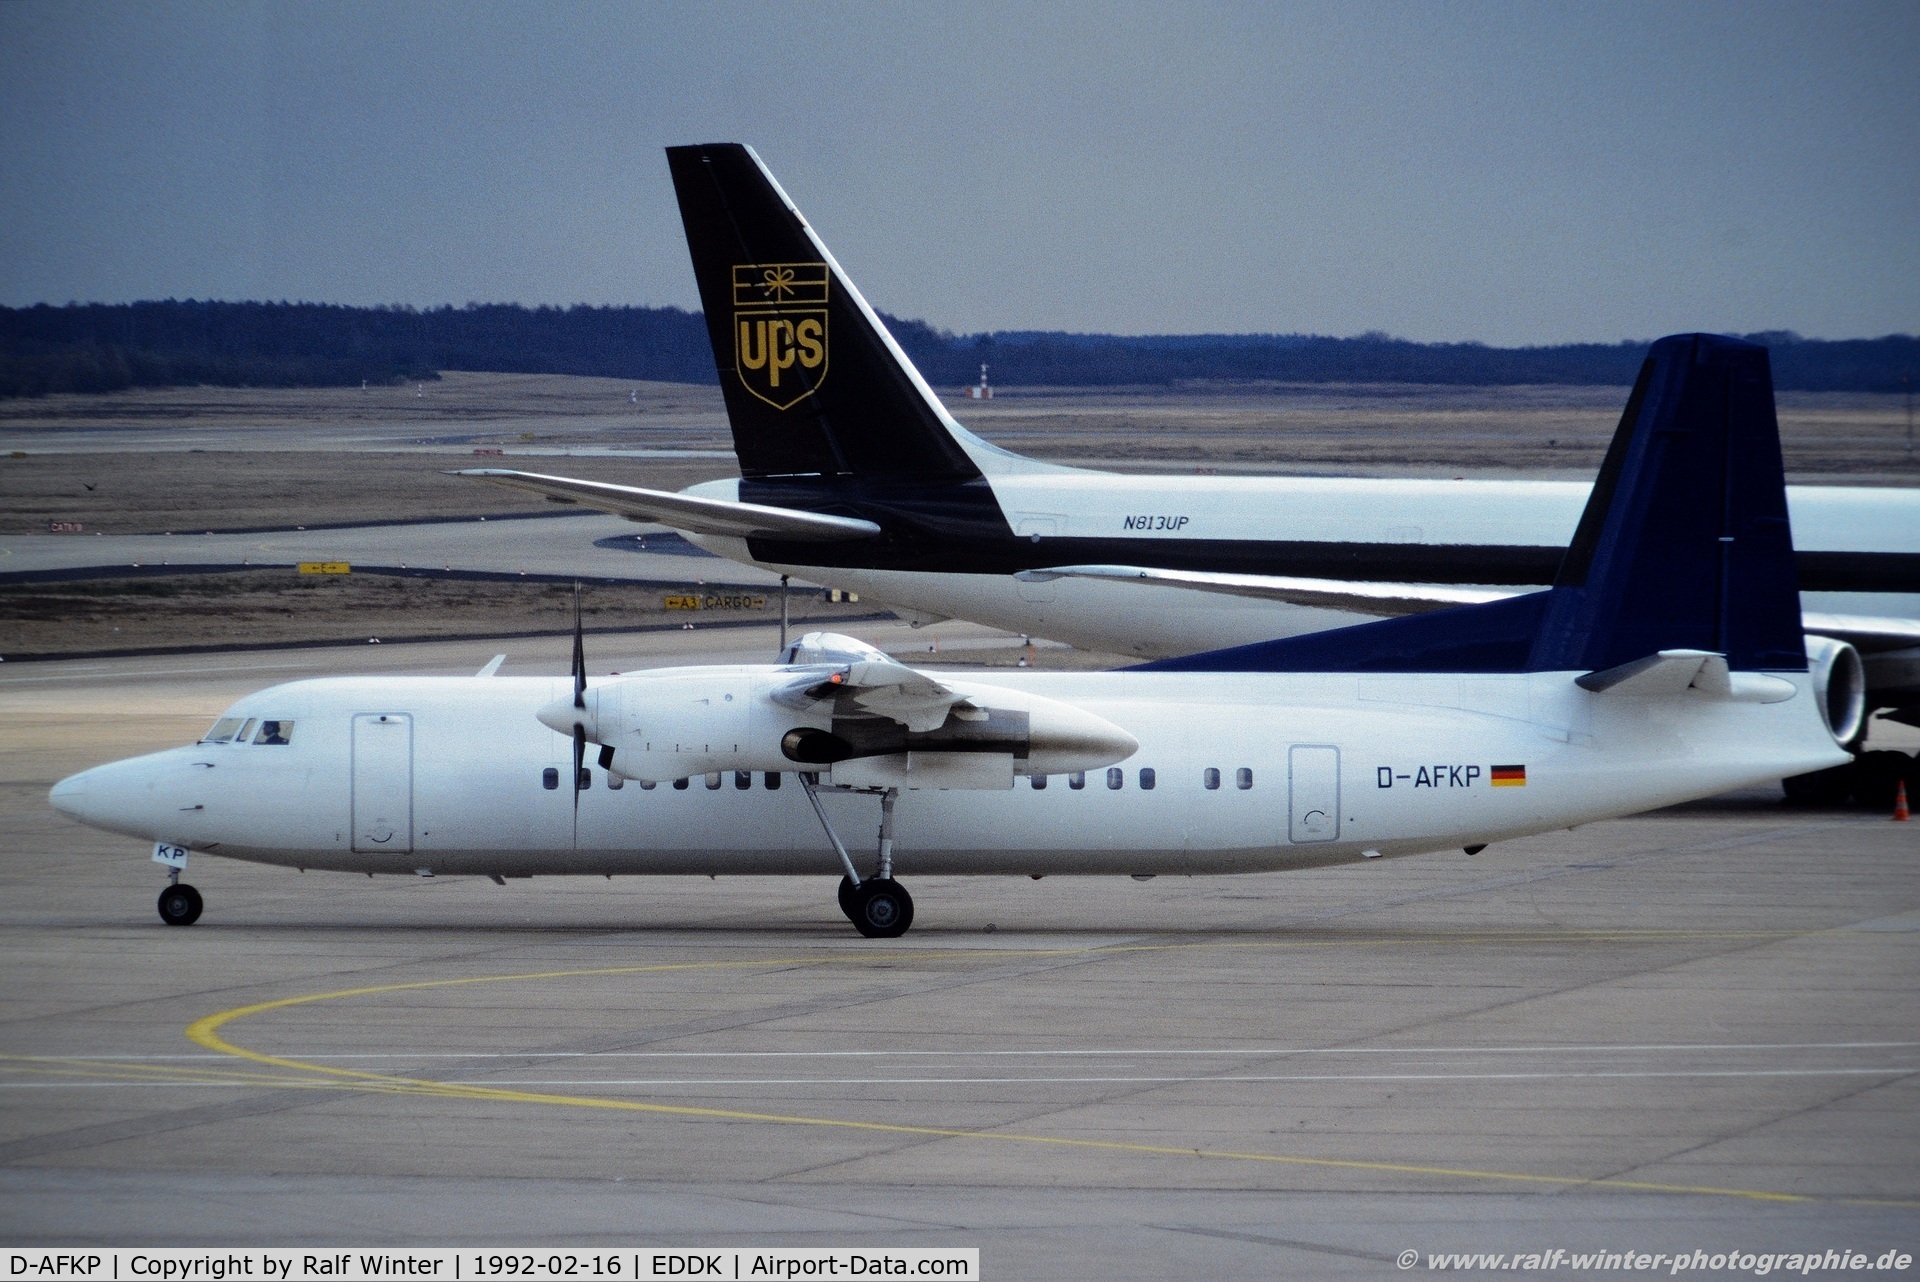 D-AFKP, 1991 Fokker 50 C/N 20235, Fokker 50 - DLT out of colours - D-AFKP - 16.02.1992 - CGN